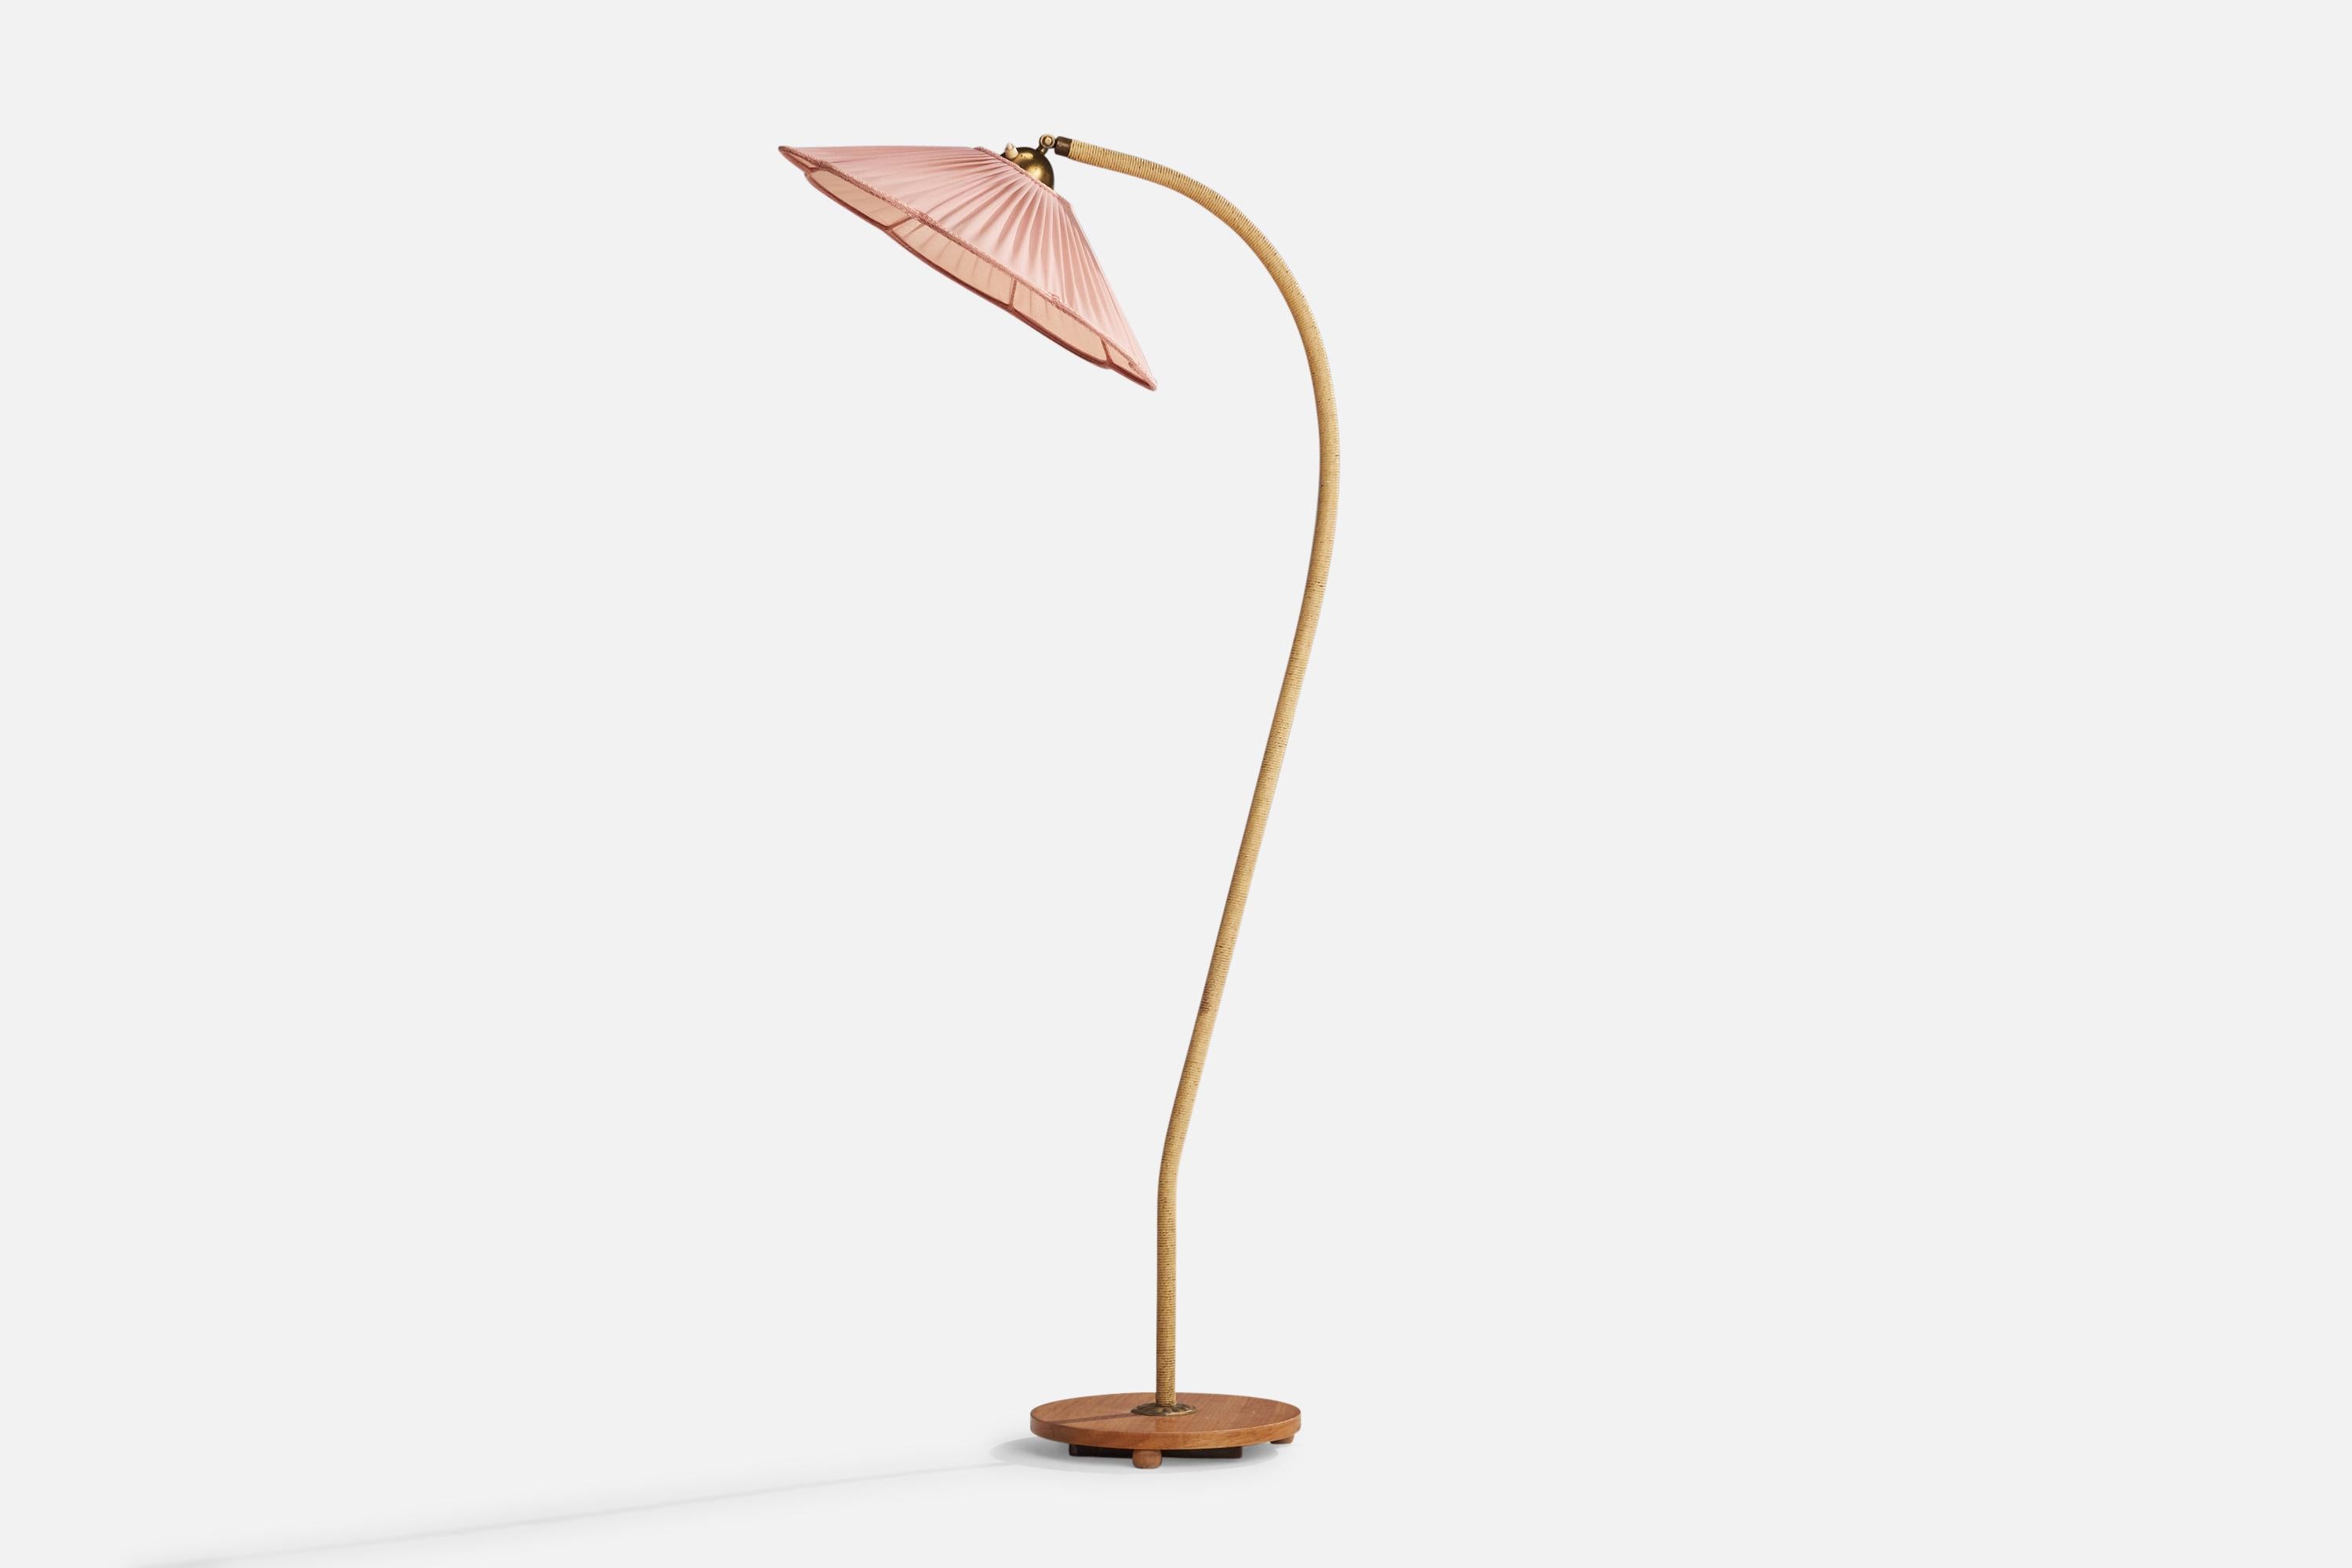 Stehlampe aus Messing, Schnur, Ulme und rosa Stoff, entworfen und hergestellt in Schweden, 1940er Jahre.

Gesamtabmessungen (Zoll): 61